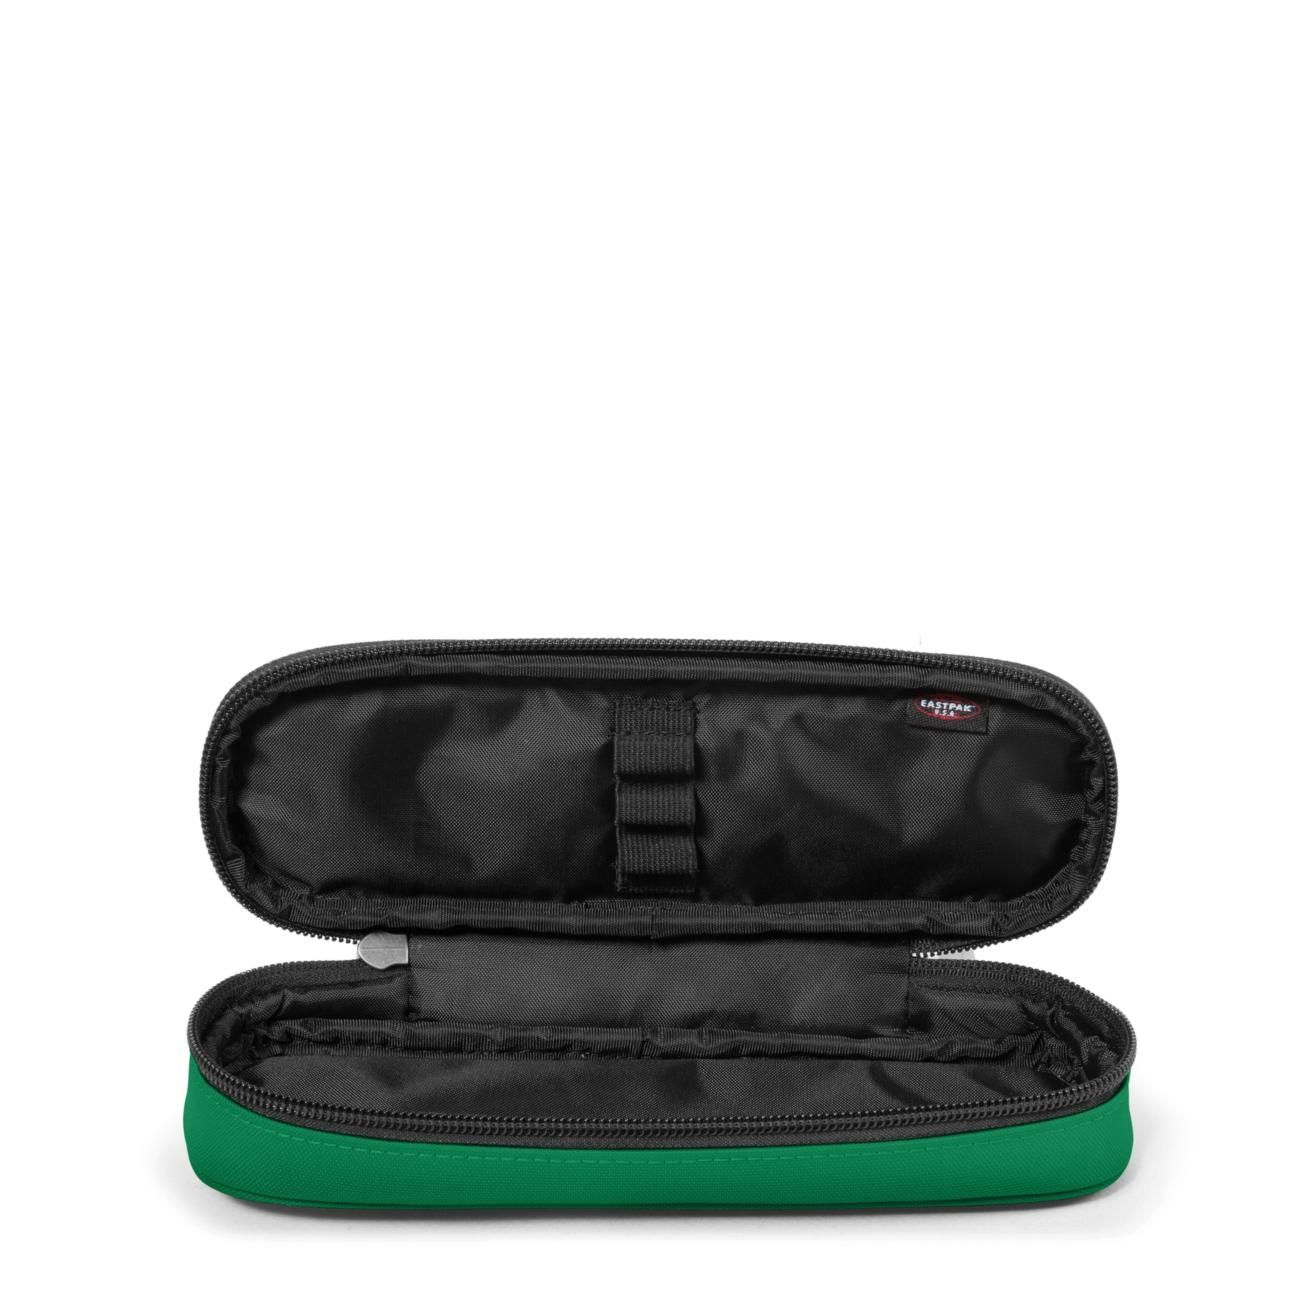 Eastpak Pencil Case - Benchmark Single - Peacock Green